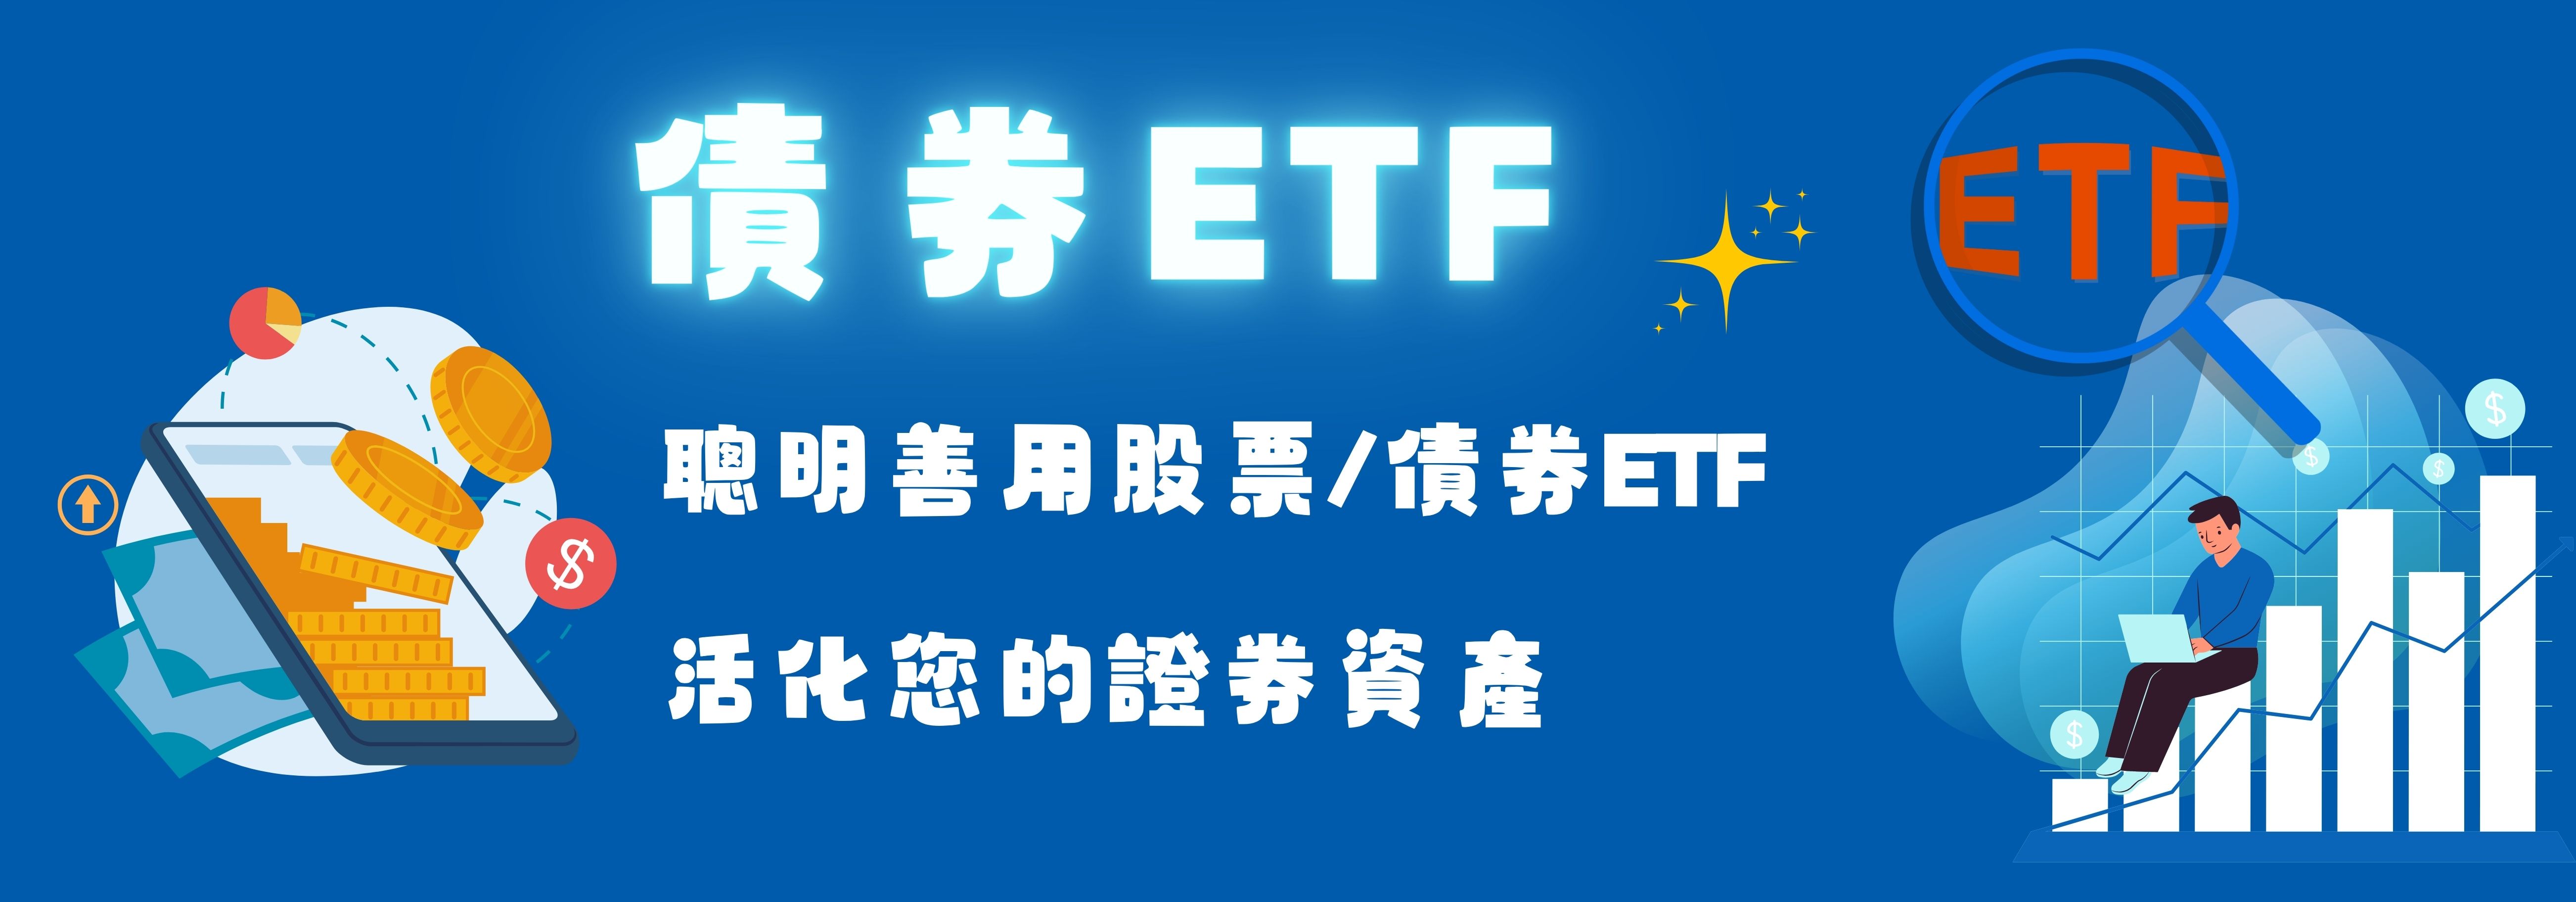 債券ETF